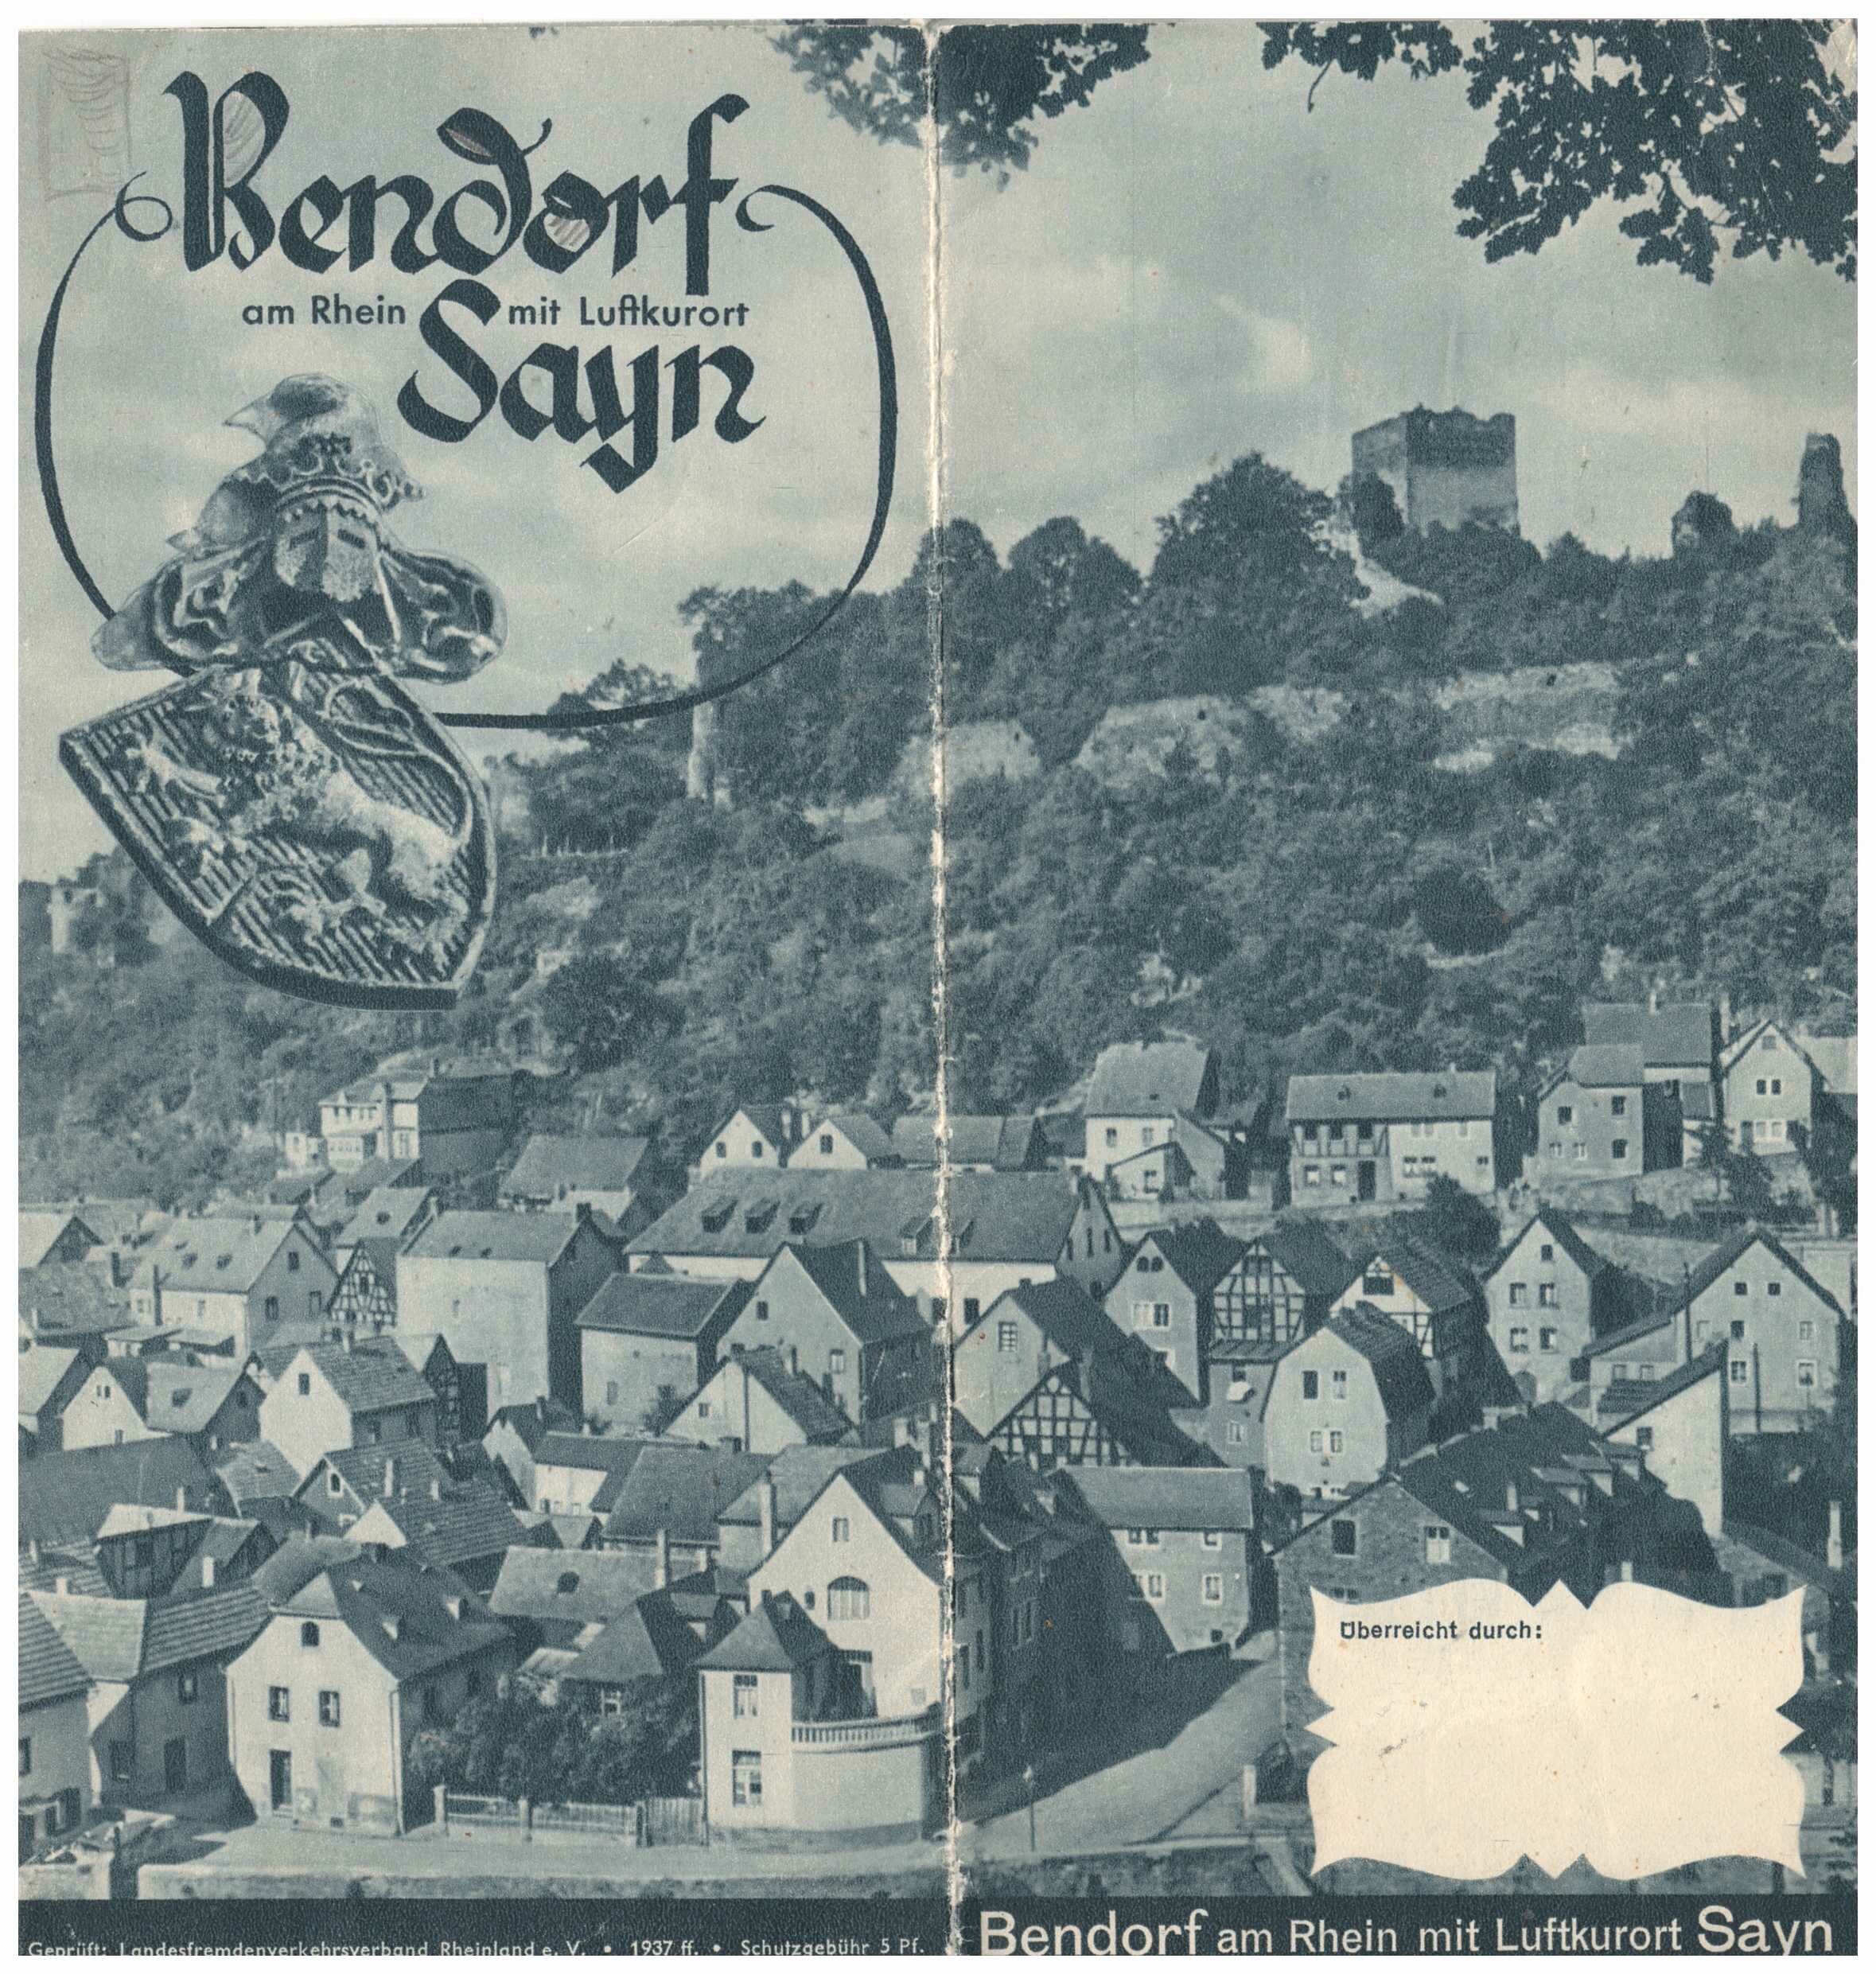 Werbefaltblatt für Bendorf am Rhein mit Luftkurort Sayn, 1937 (Stiftung Sayner Hütte, Rheinisches Eisenkunstguss-Museum CC BY-NC-SA)